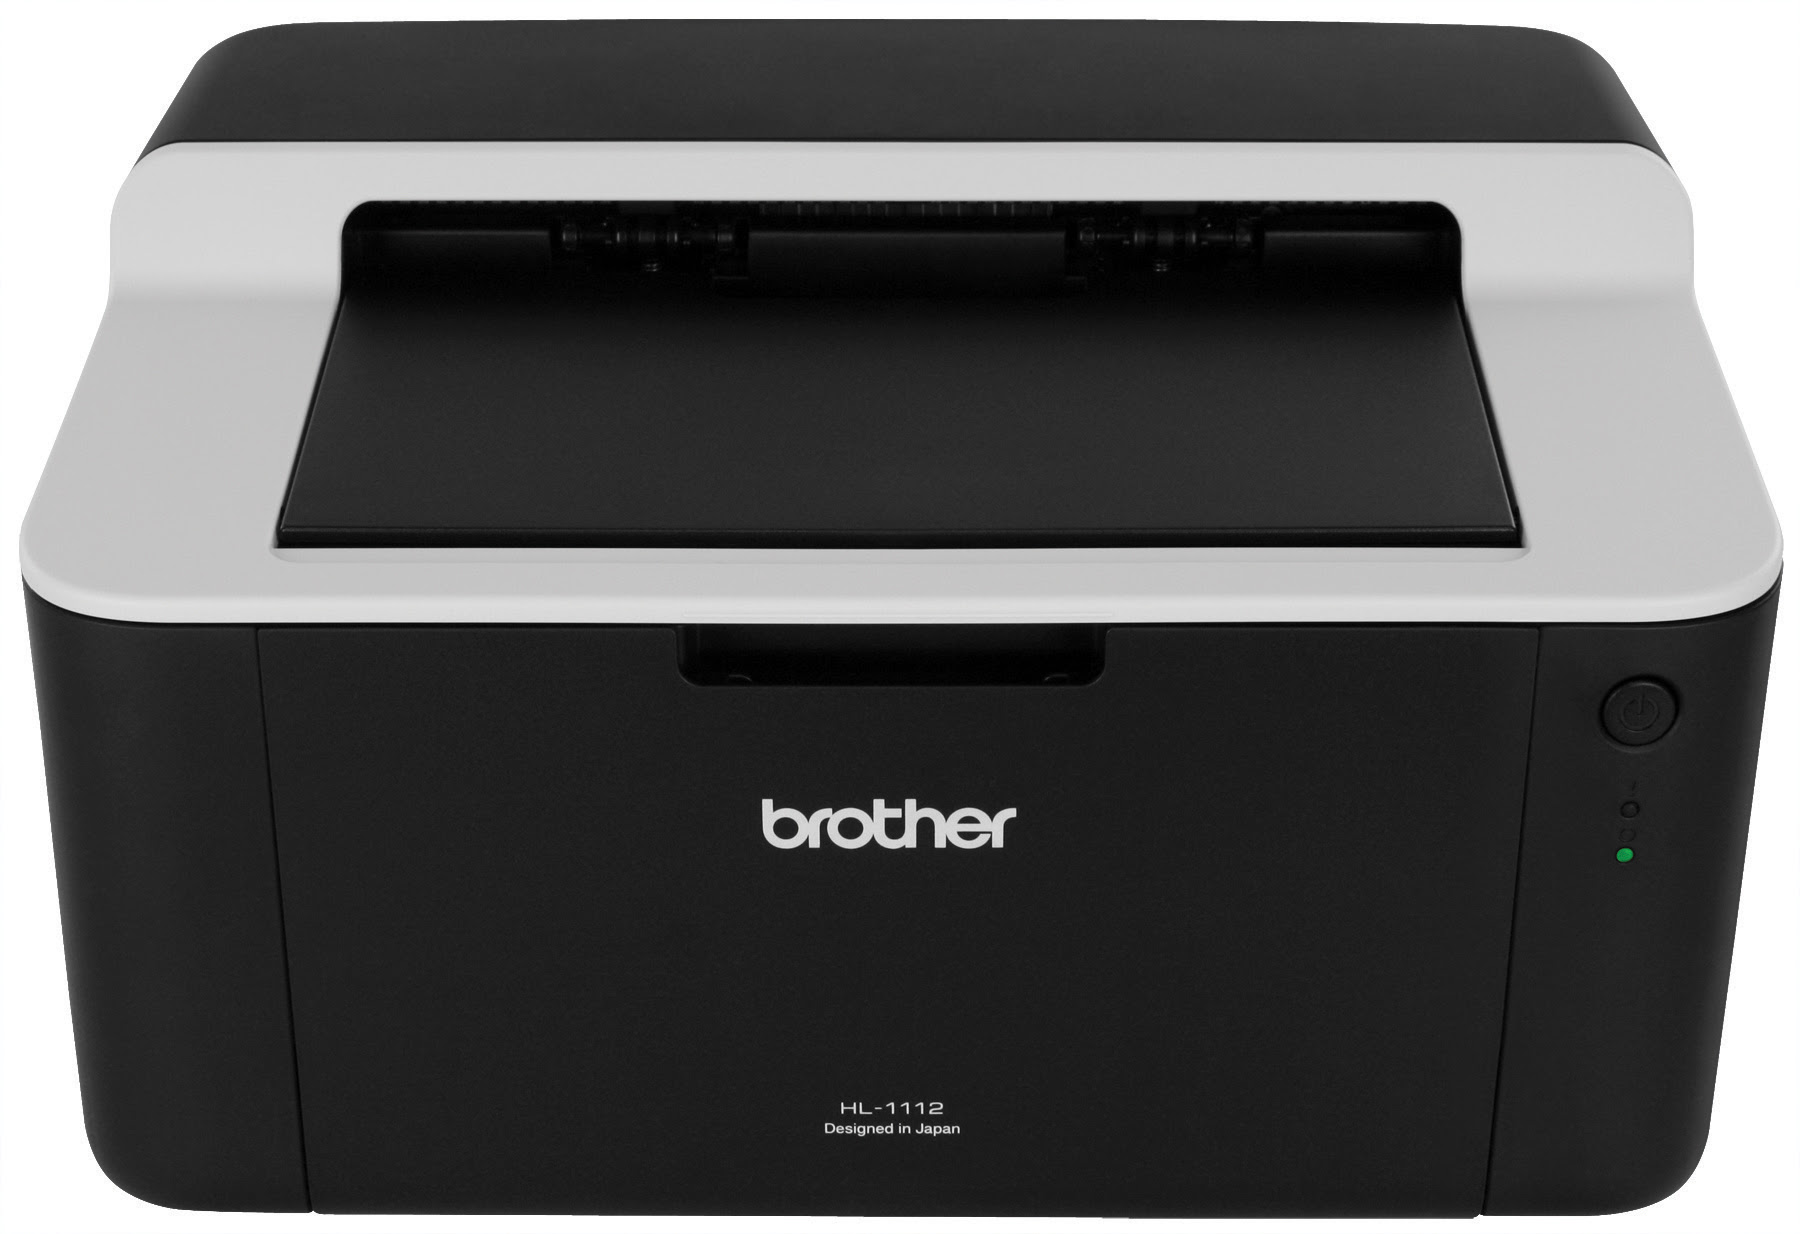 تعريف طابعة Brother 1110 / Brother HL-1110 - Imprimante ...